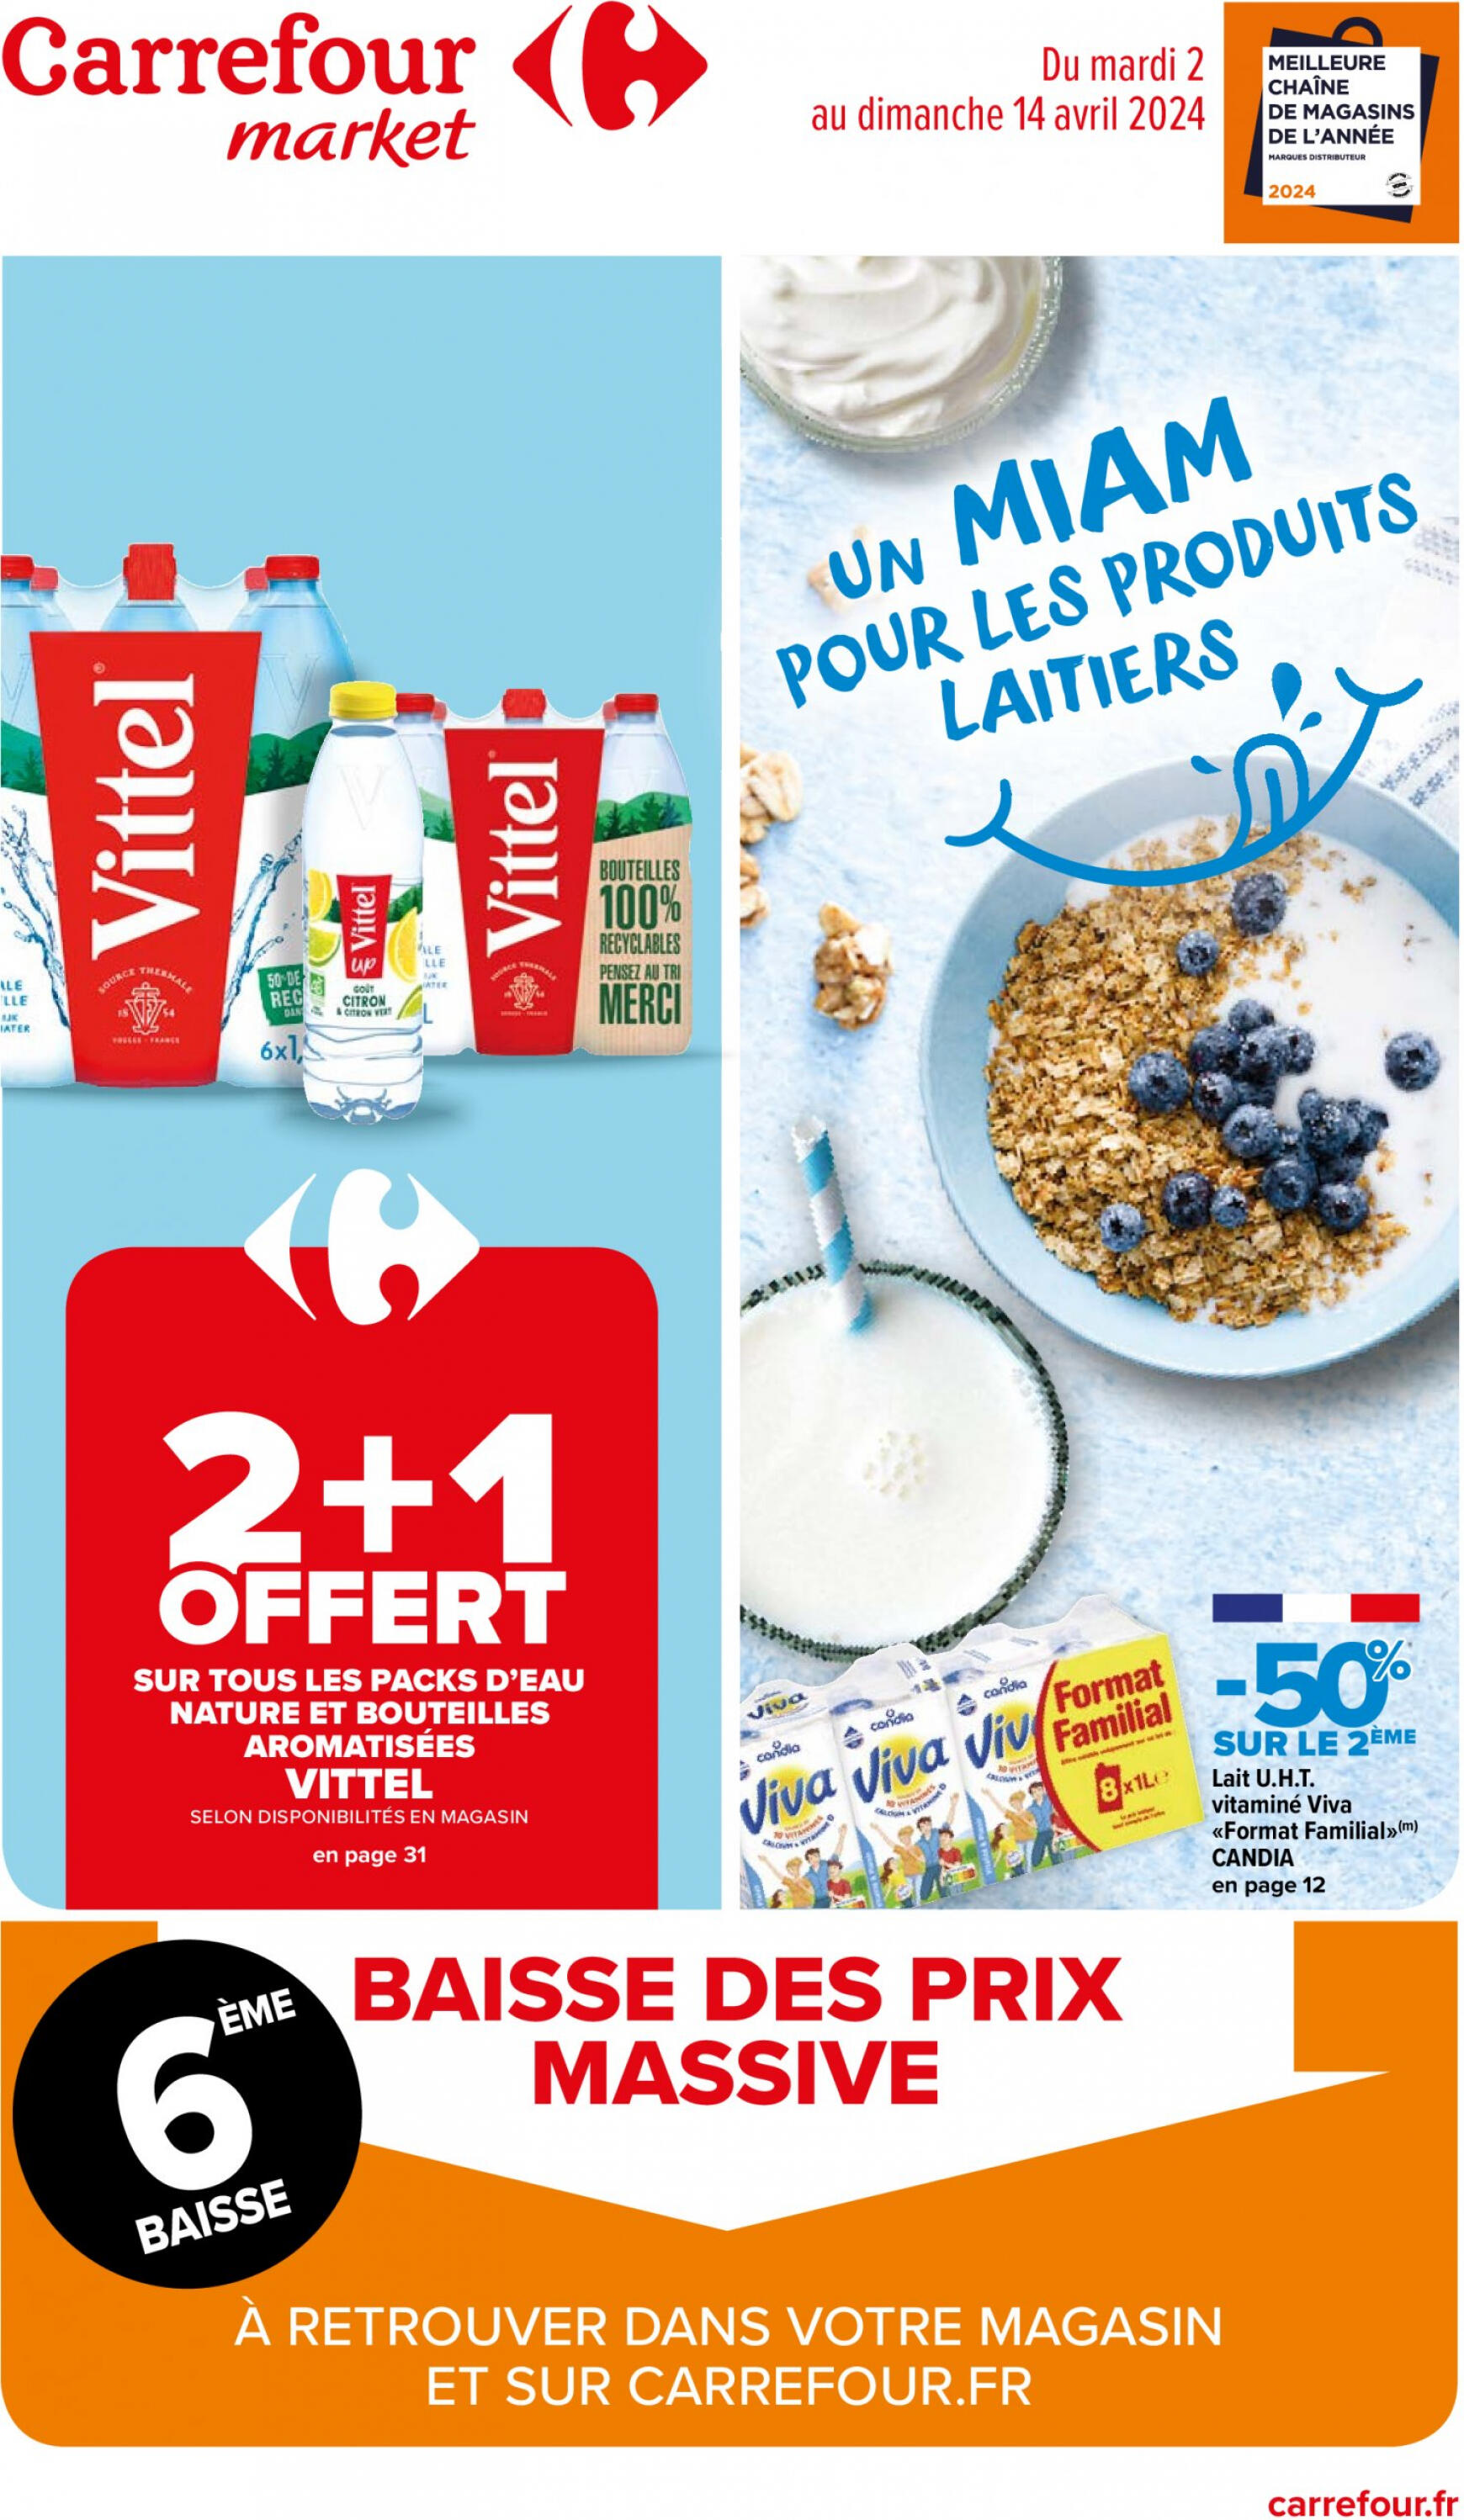 carrefour-market - Carrefour Market - Un MIAM pour les produits laitiers valable à partir de 02.04.2024 - page: 1